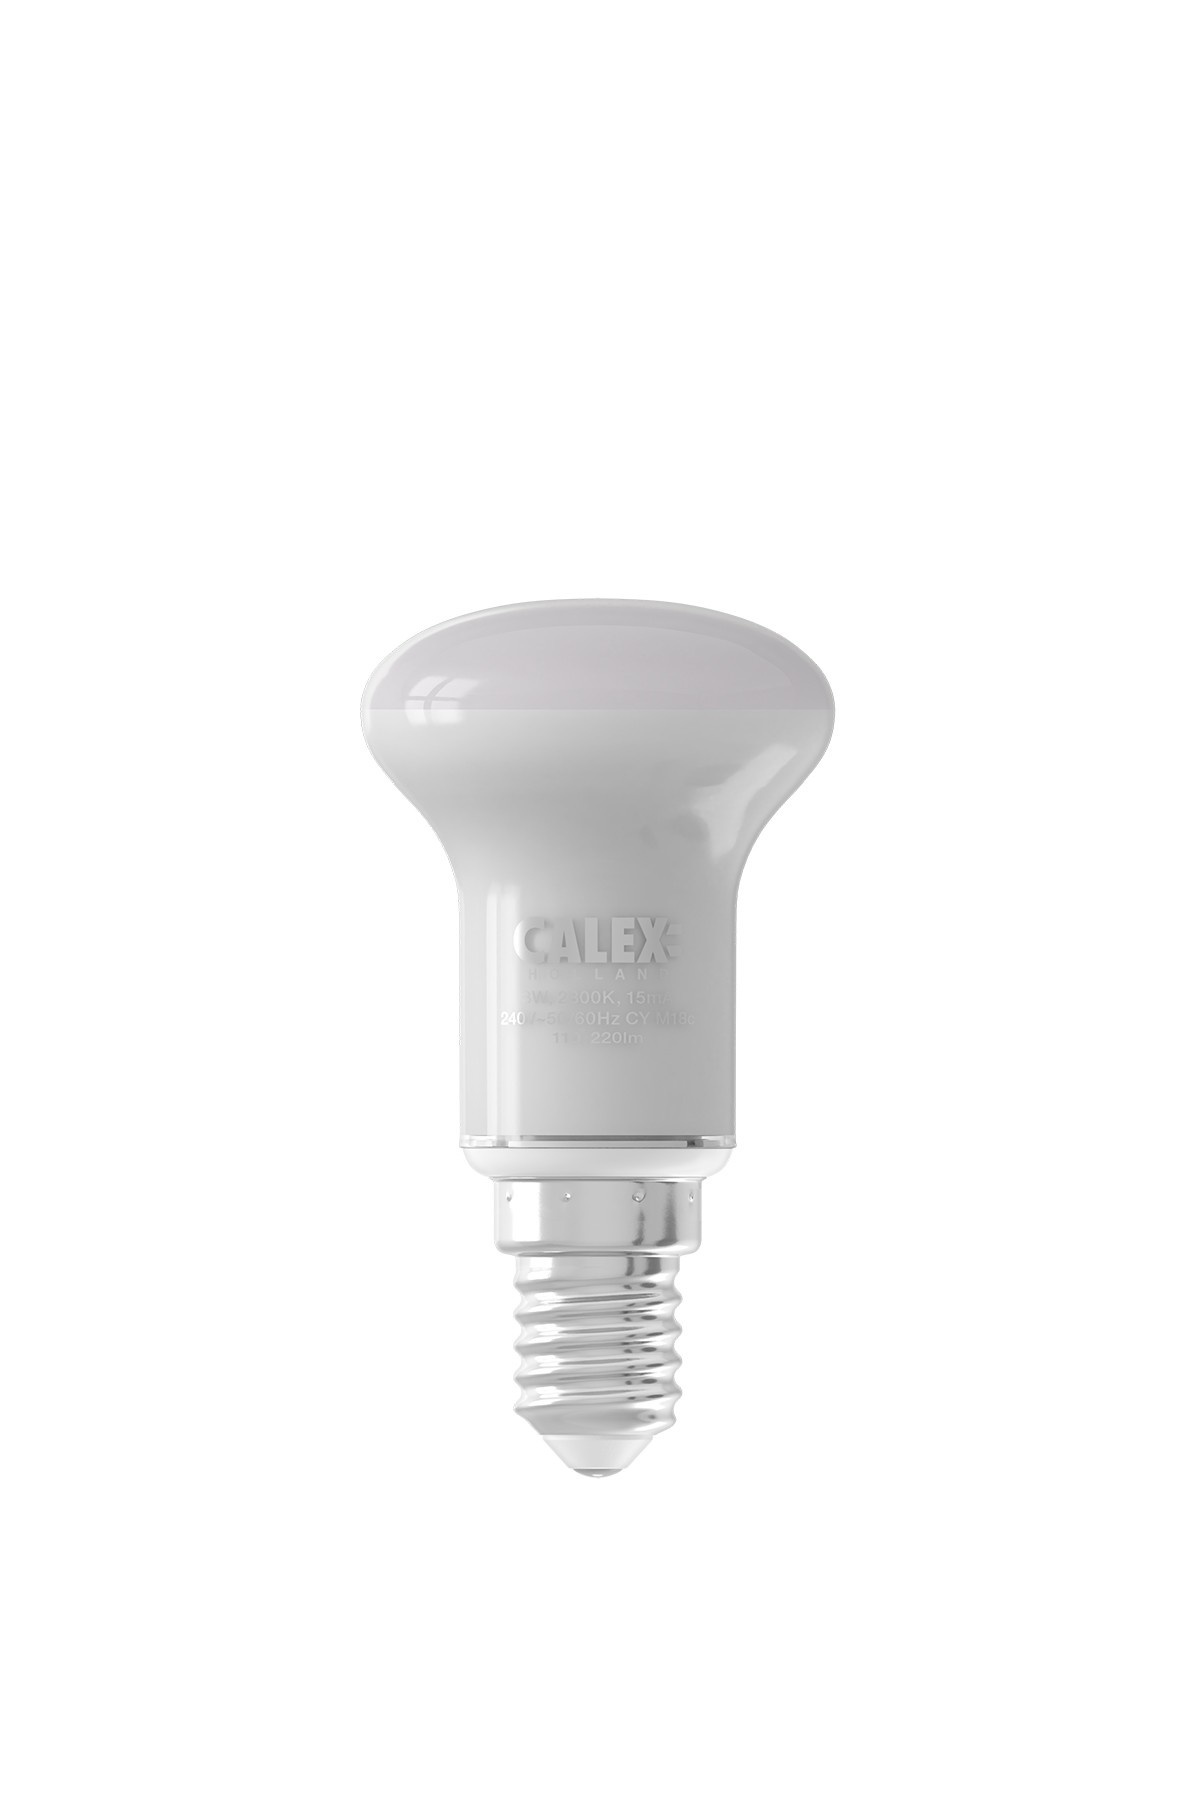 Ledvion 10x Ampoules LED GU10 Dimmable - 5W - Blanc Neutre - 4000K - 345  Lumen - Pack économique